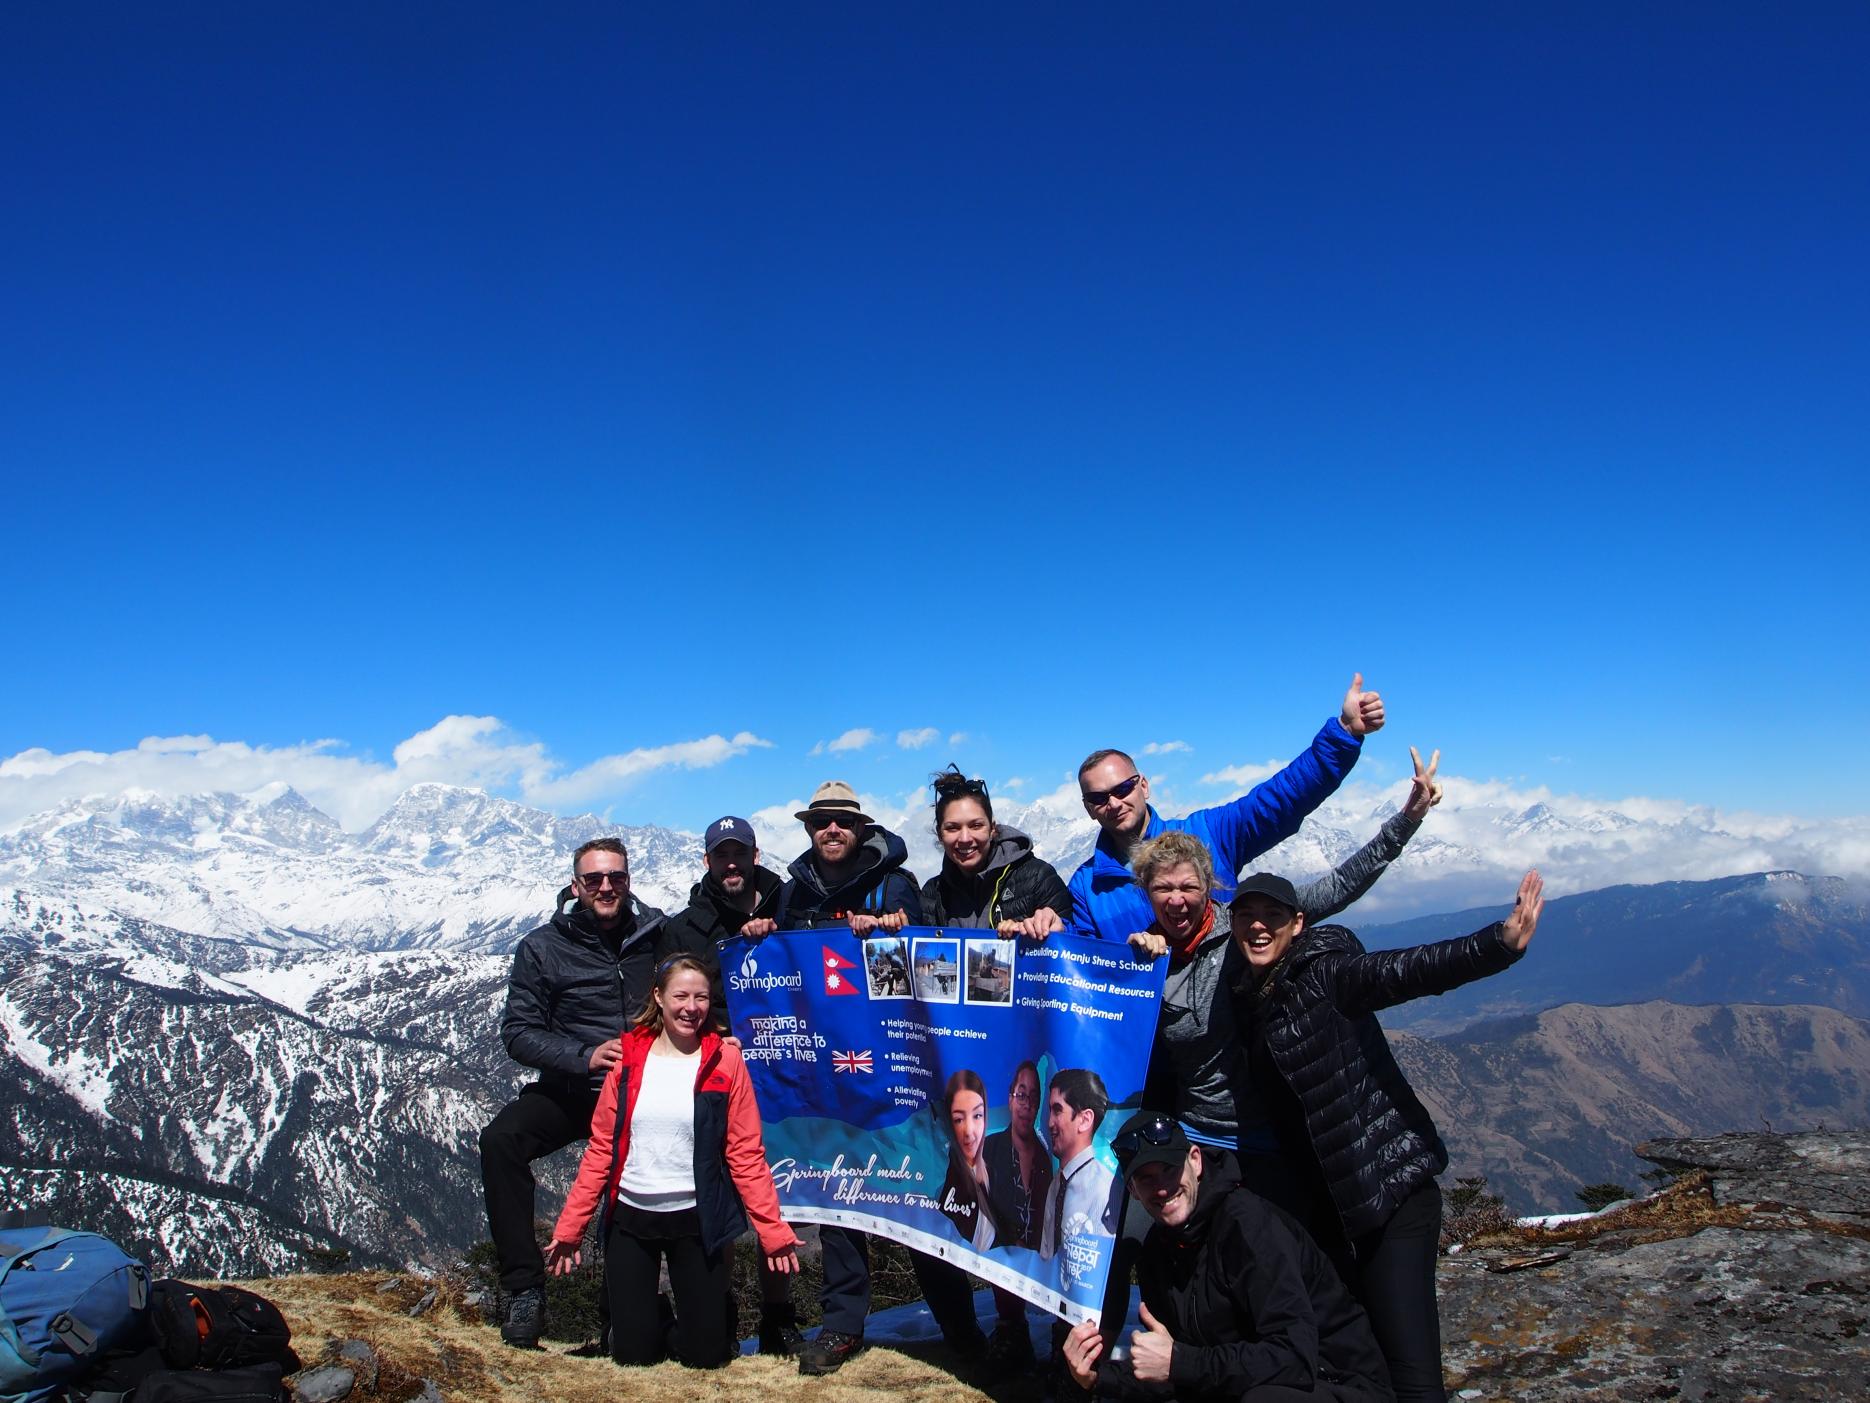 Nepal Trek raises £100,000 for Springboard 